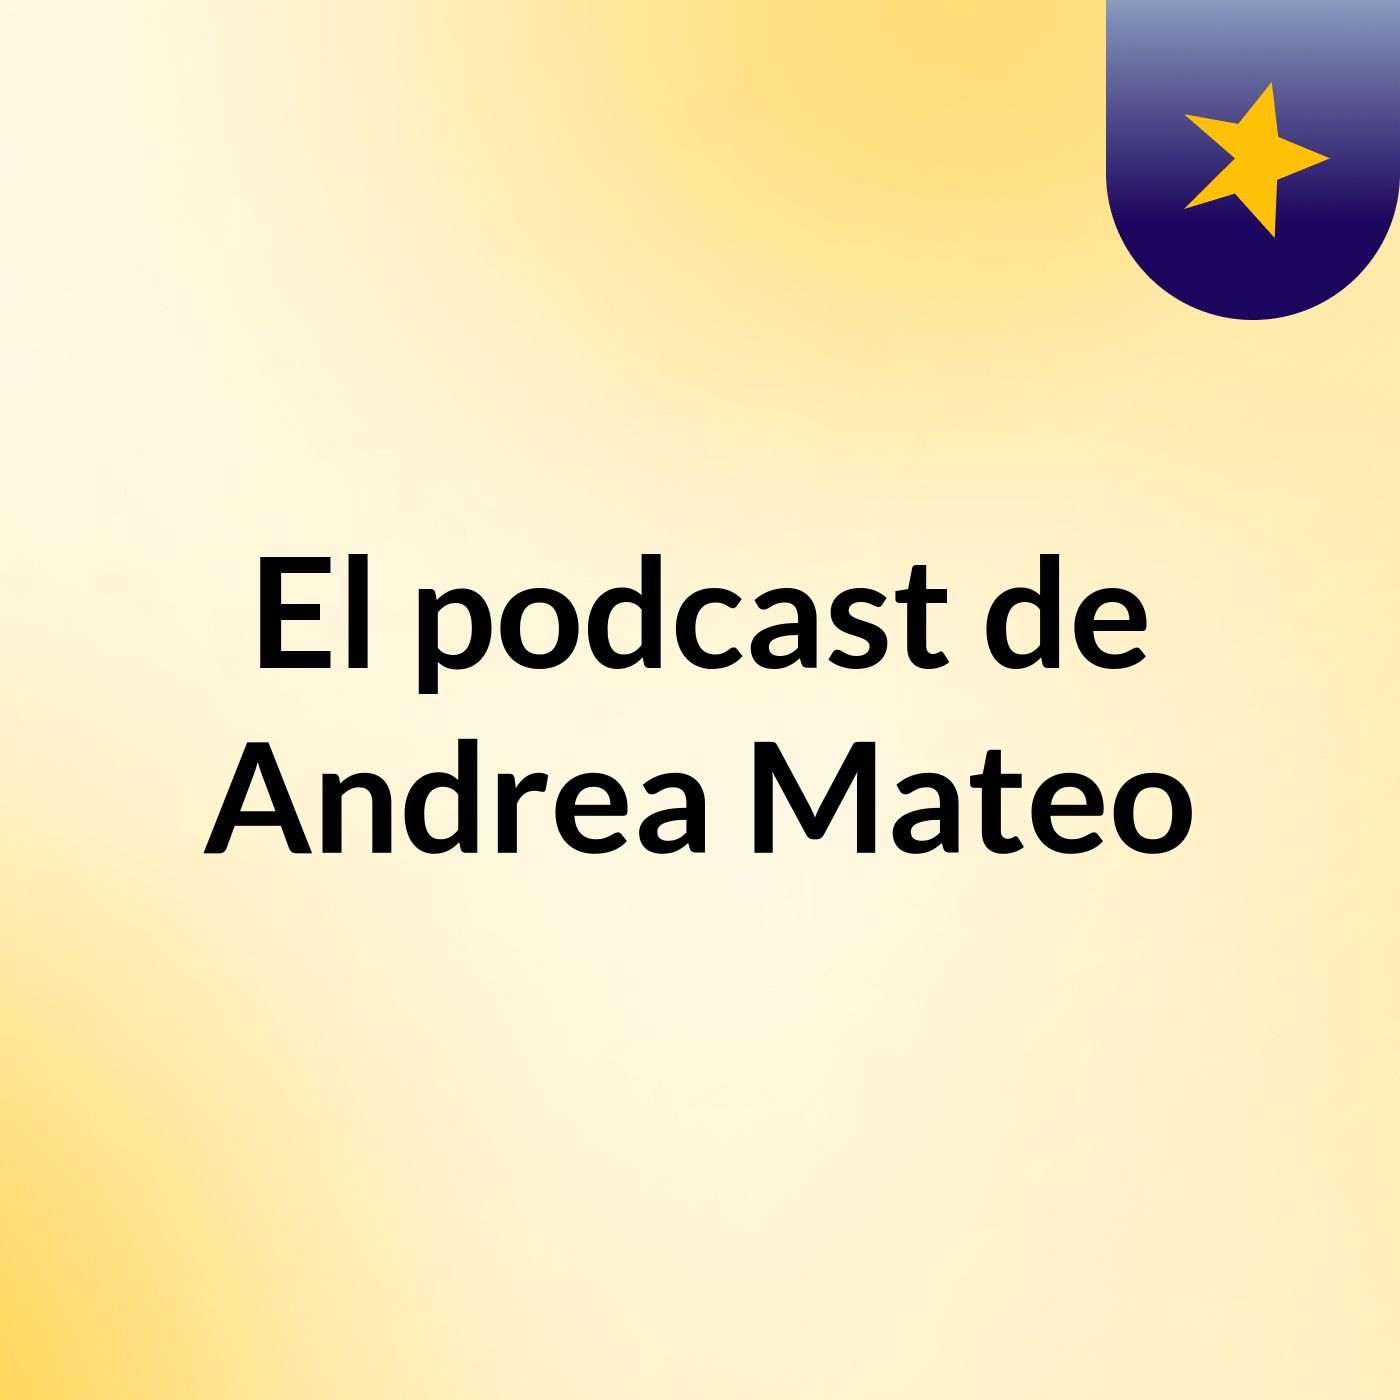 El podcast de Andrea Mateo